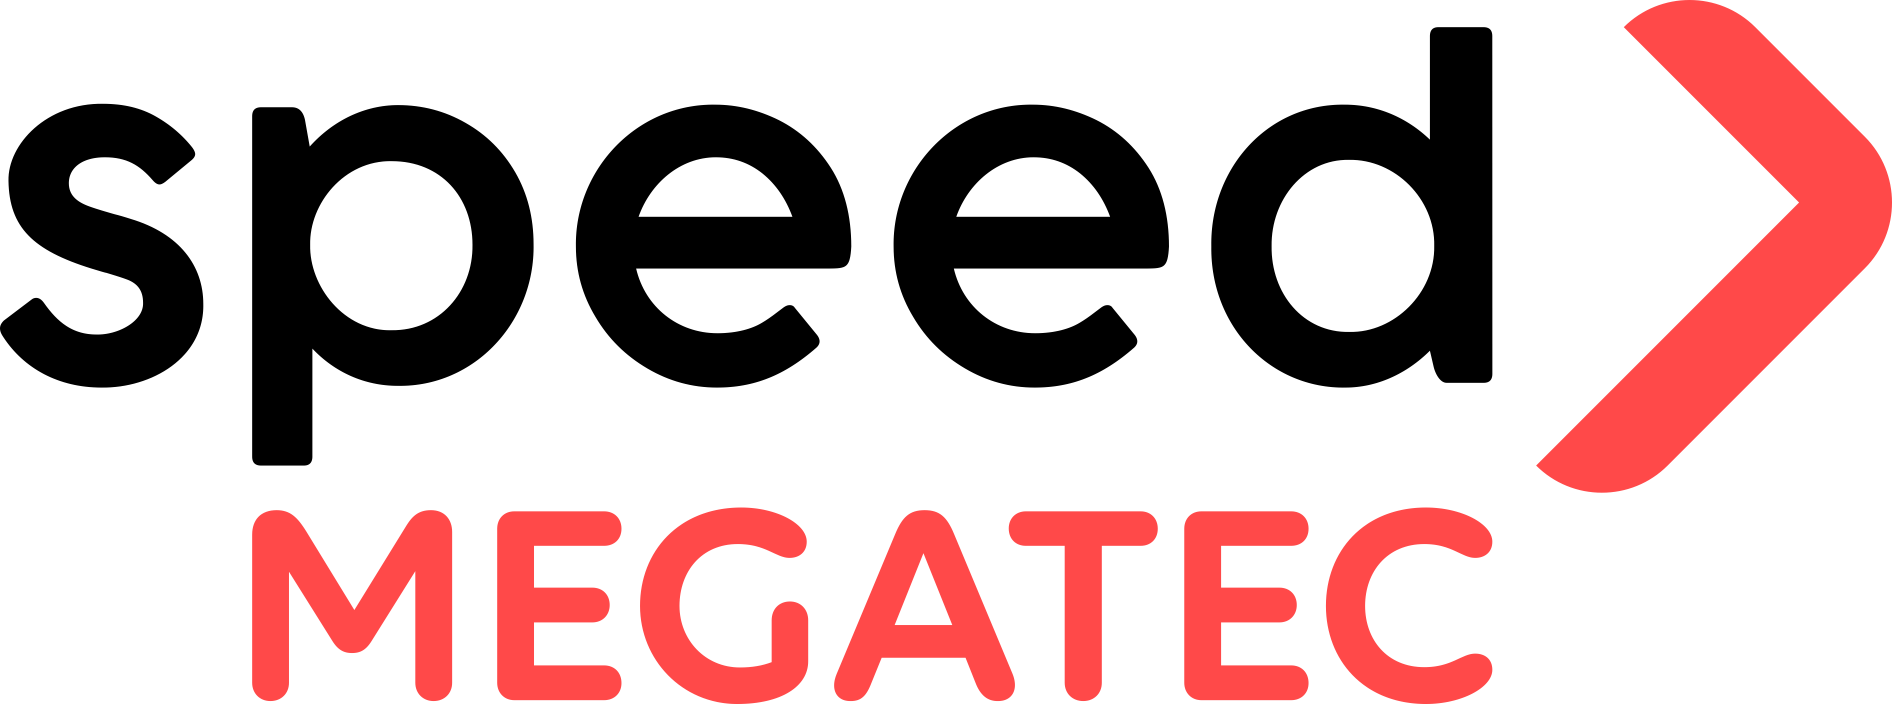 Megatec logotyp